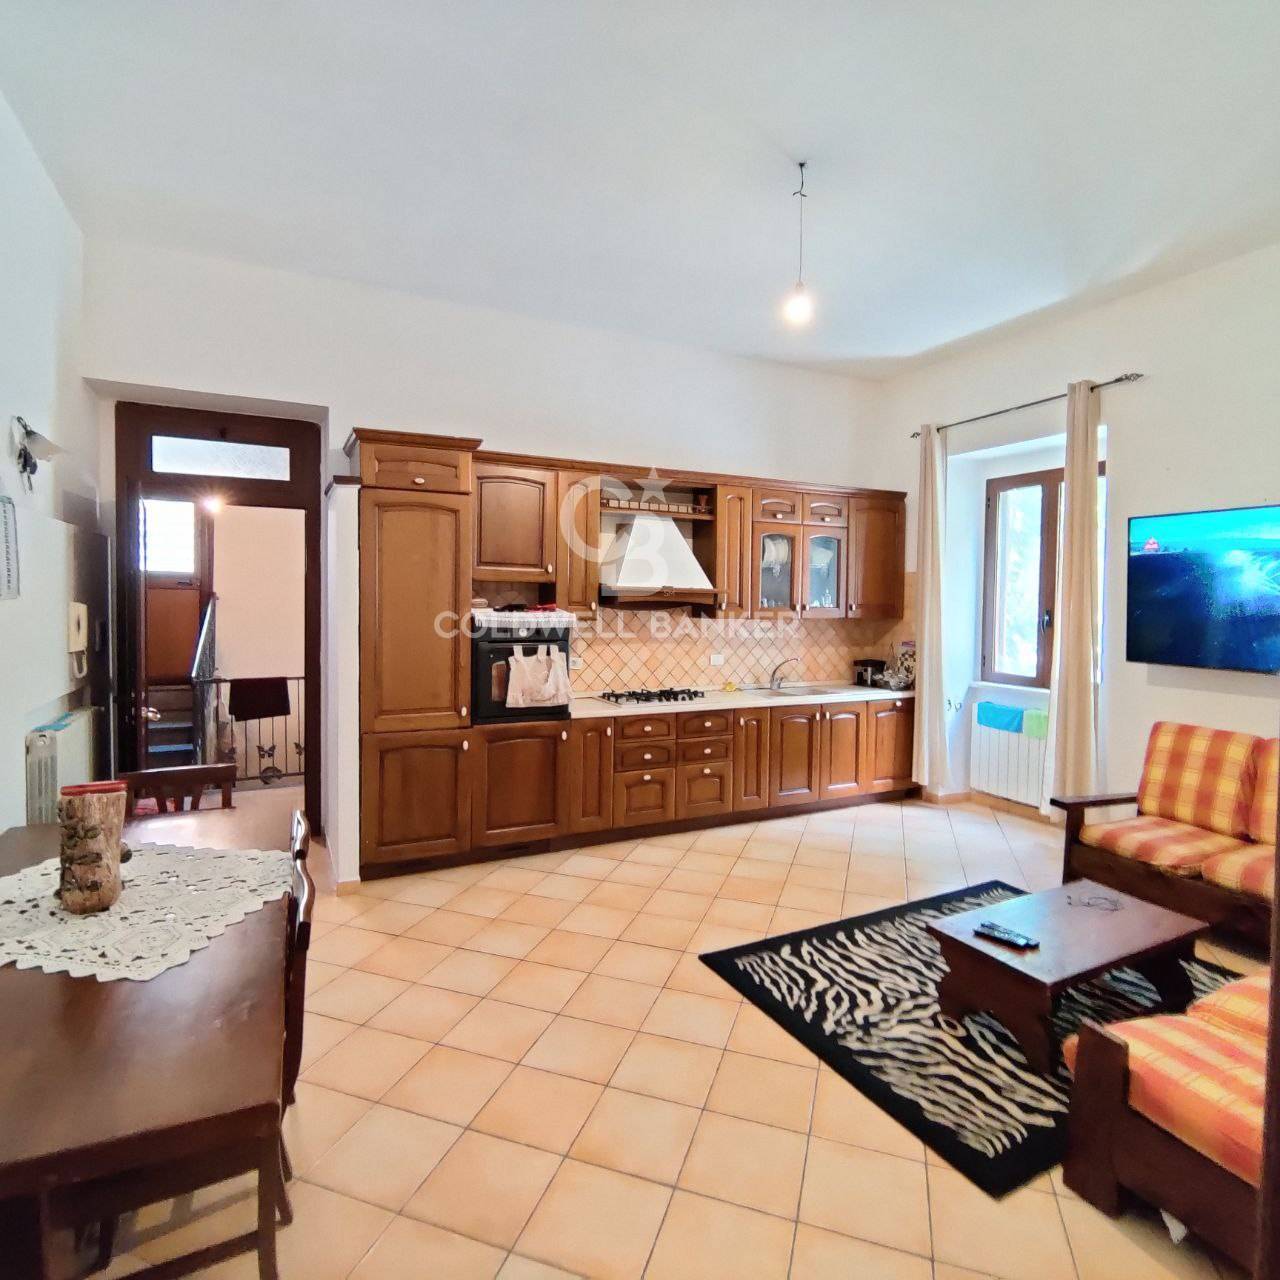 Appartamento in vendita a Tuscania, 4 locali, zona Località: centrostorico, prezzo € 75.000 | PortaleAgenzieImmobiliari.it